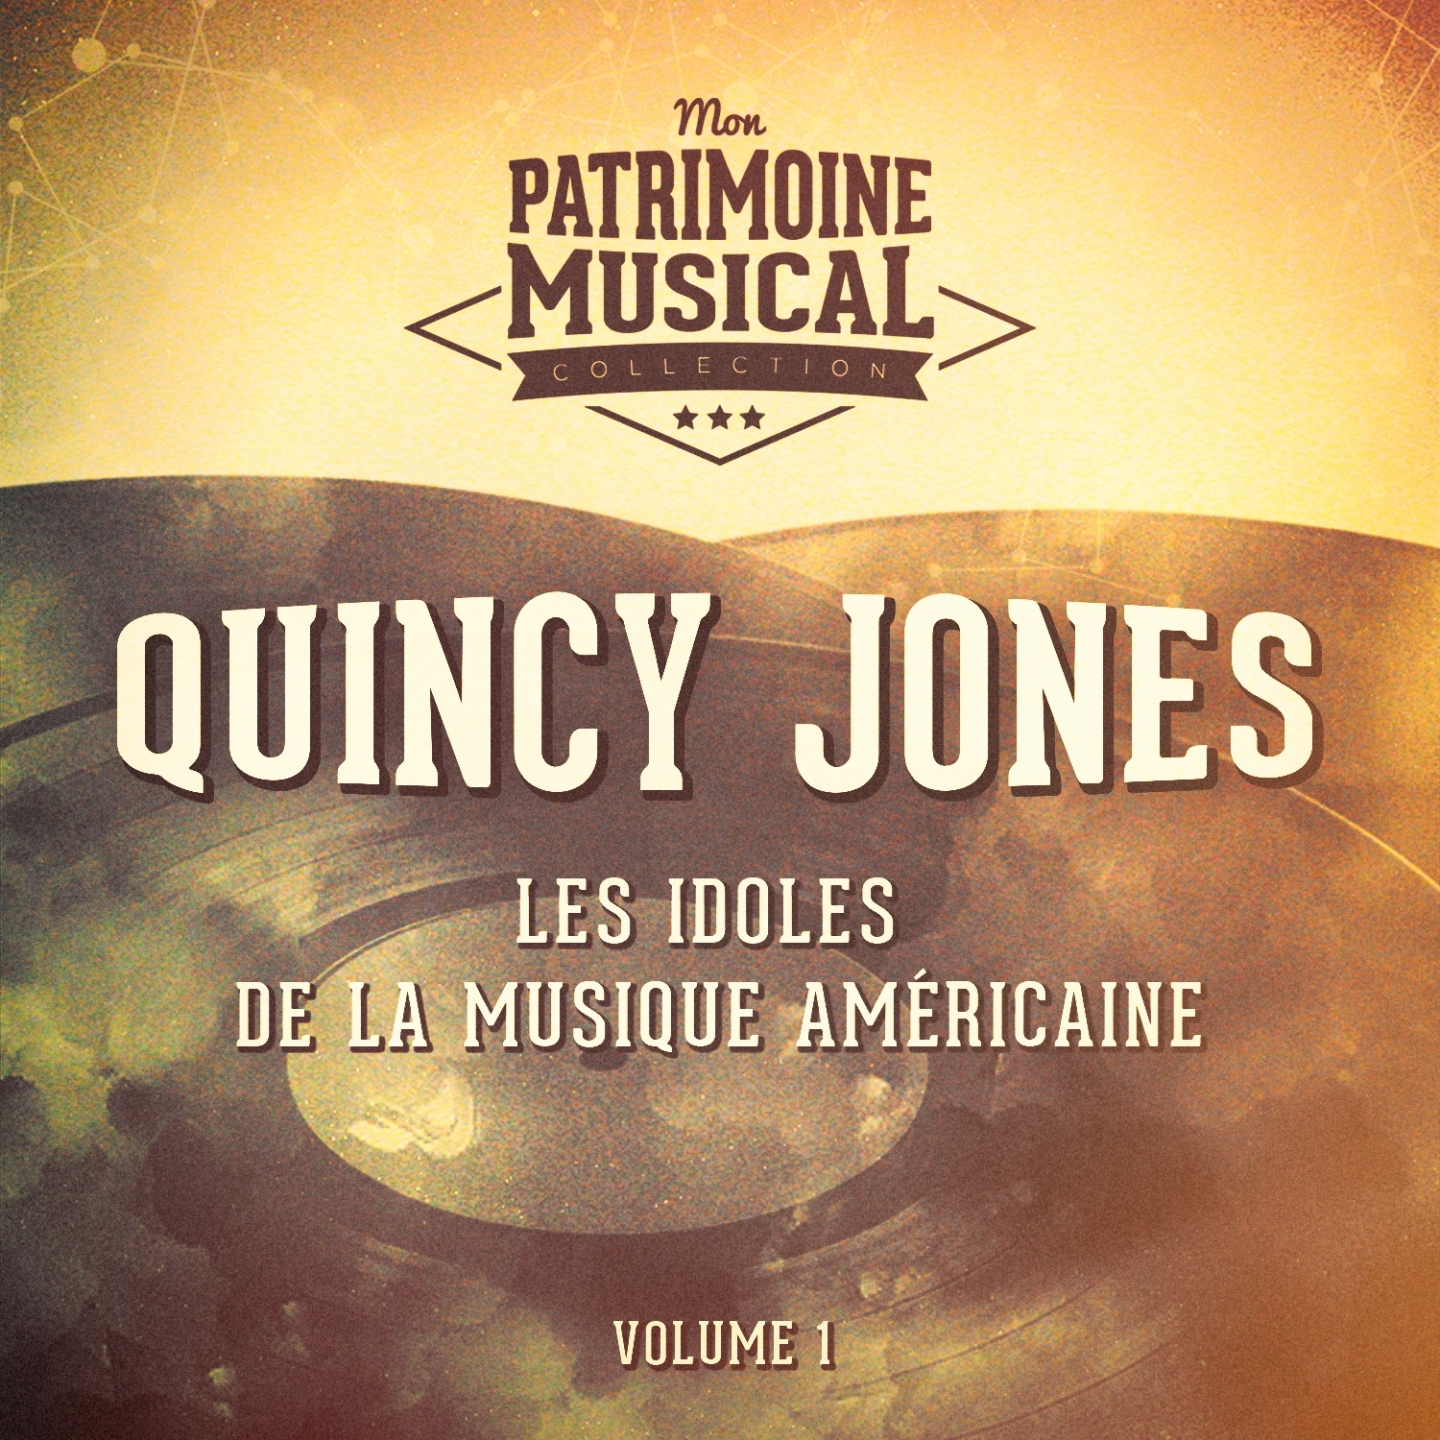 Les idoles de la musique ame ricaine : Quincy Jones, Vol. 1